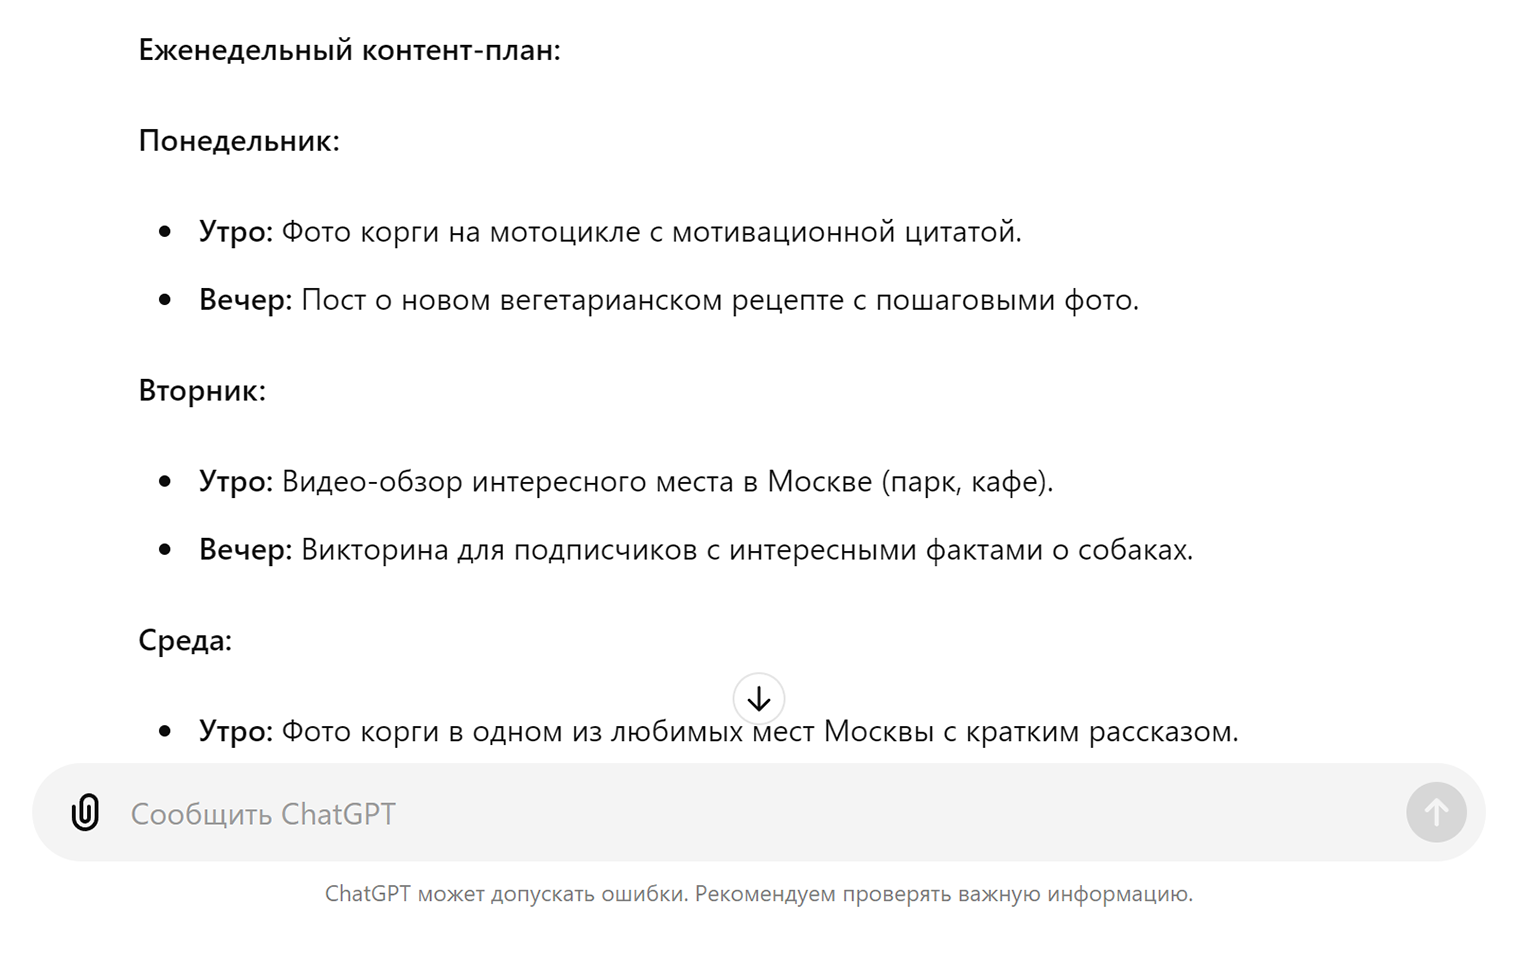 Контент⁠-⁠план для корги-байкера из Москвы, вегетарианца, любимца детей. Пришлось сообщить нейросети часть личных данных